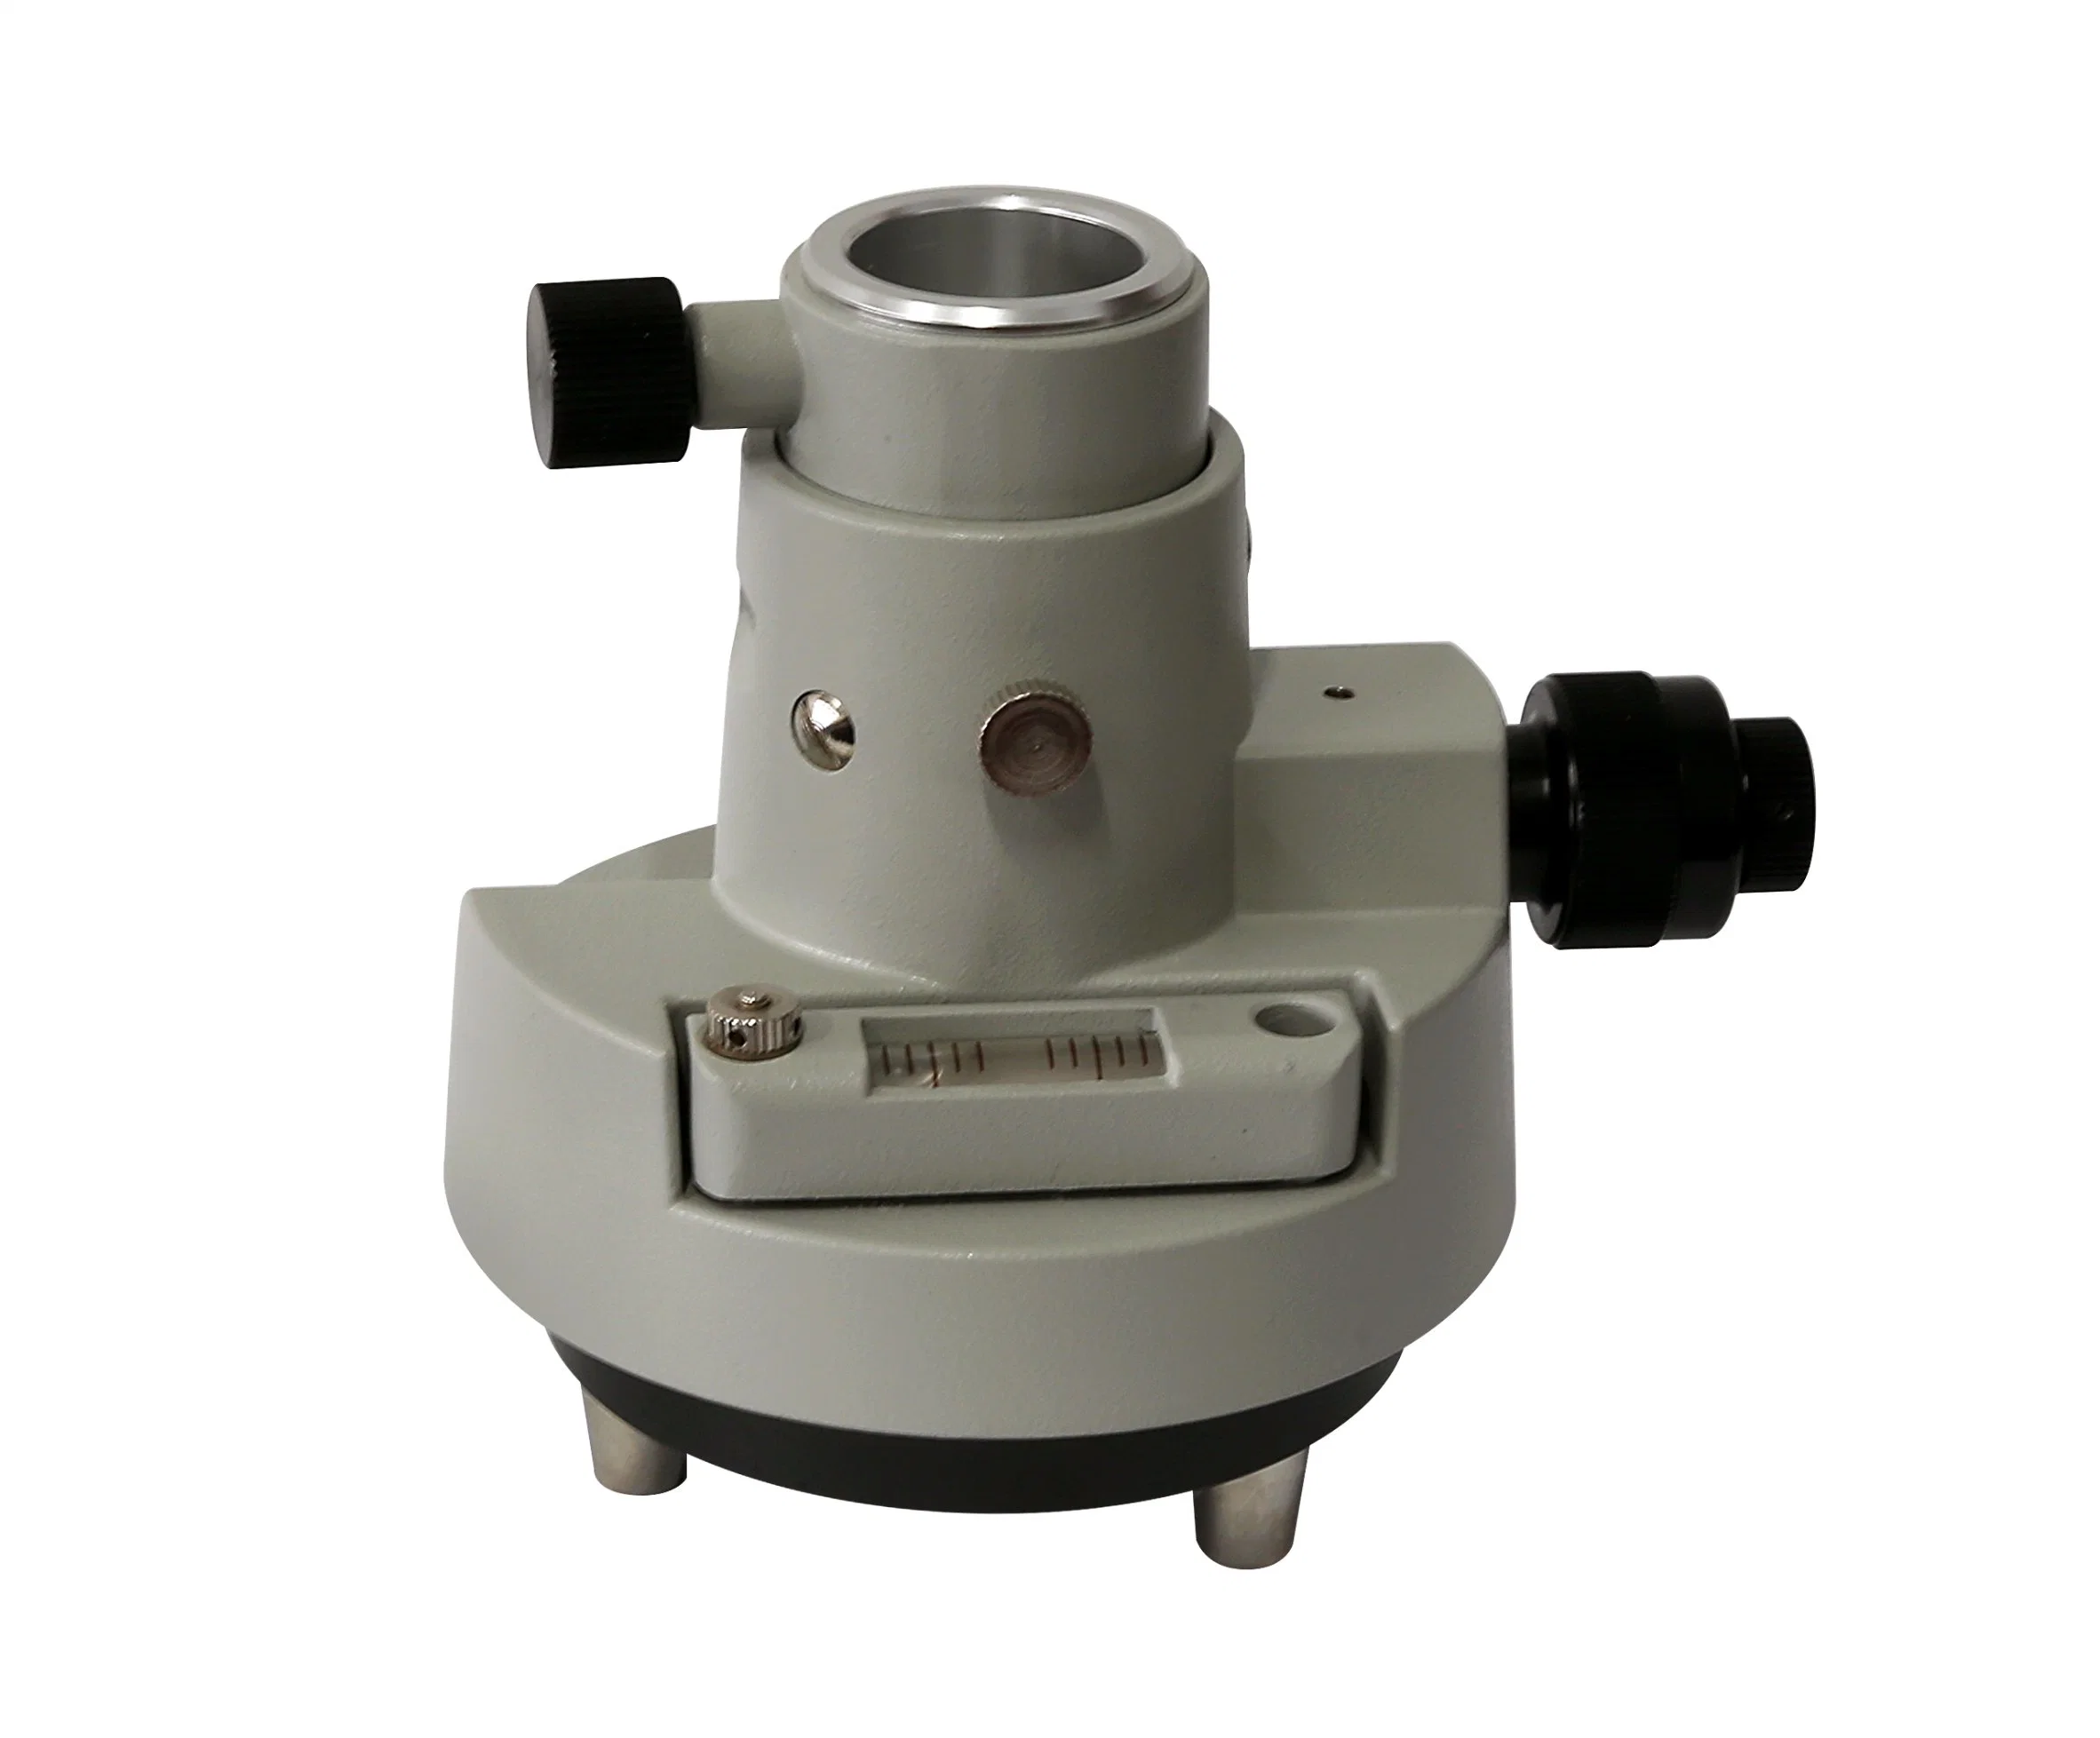 Tribrach Adapter with Optical Plummet